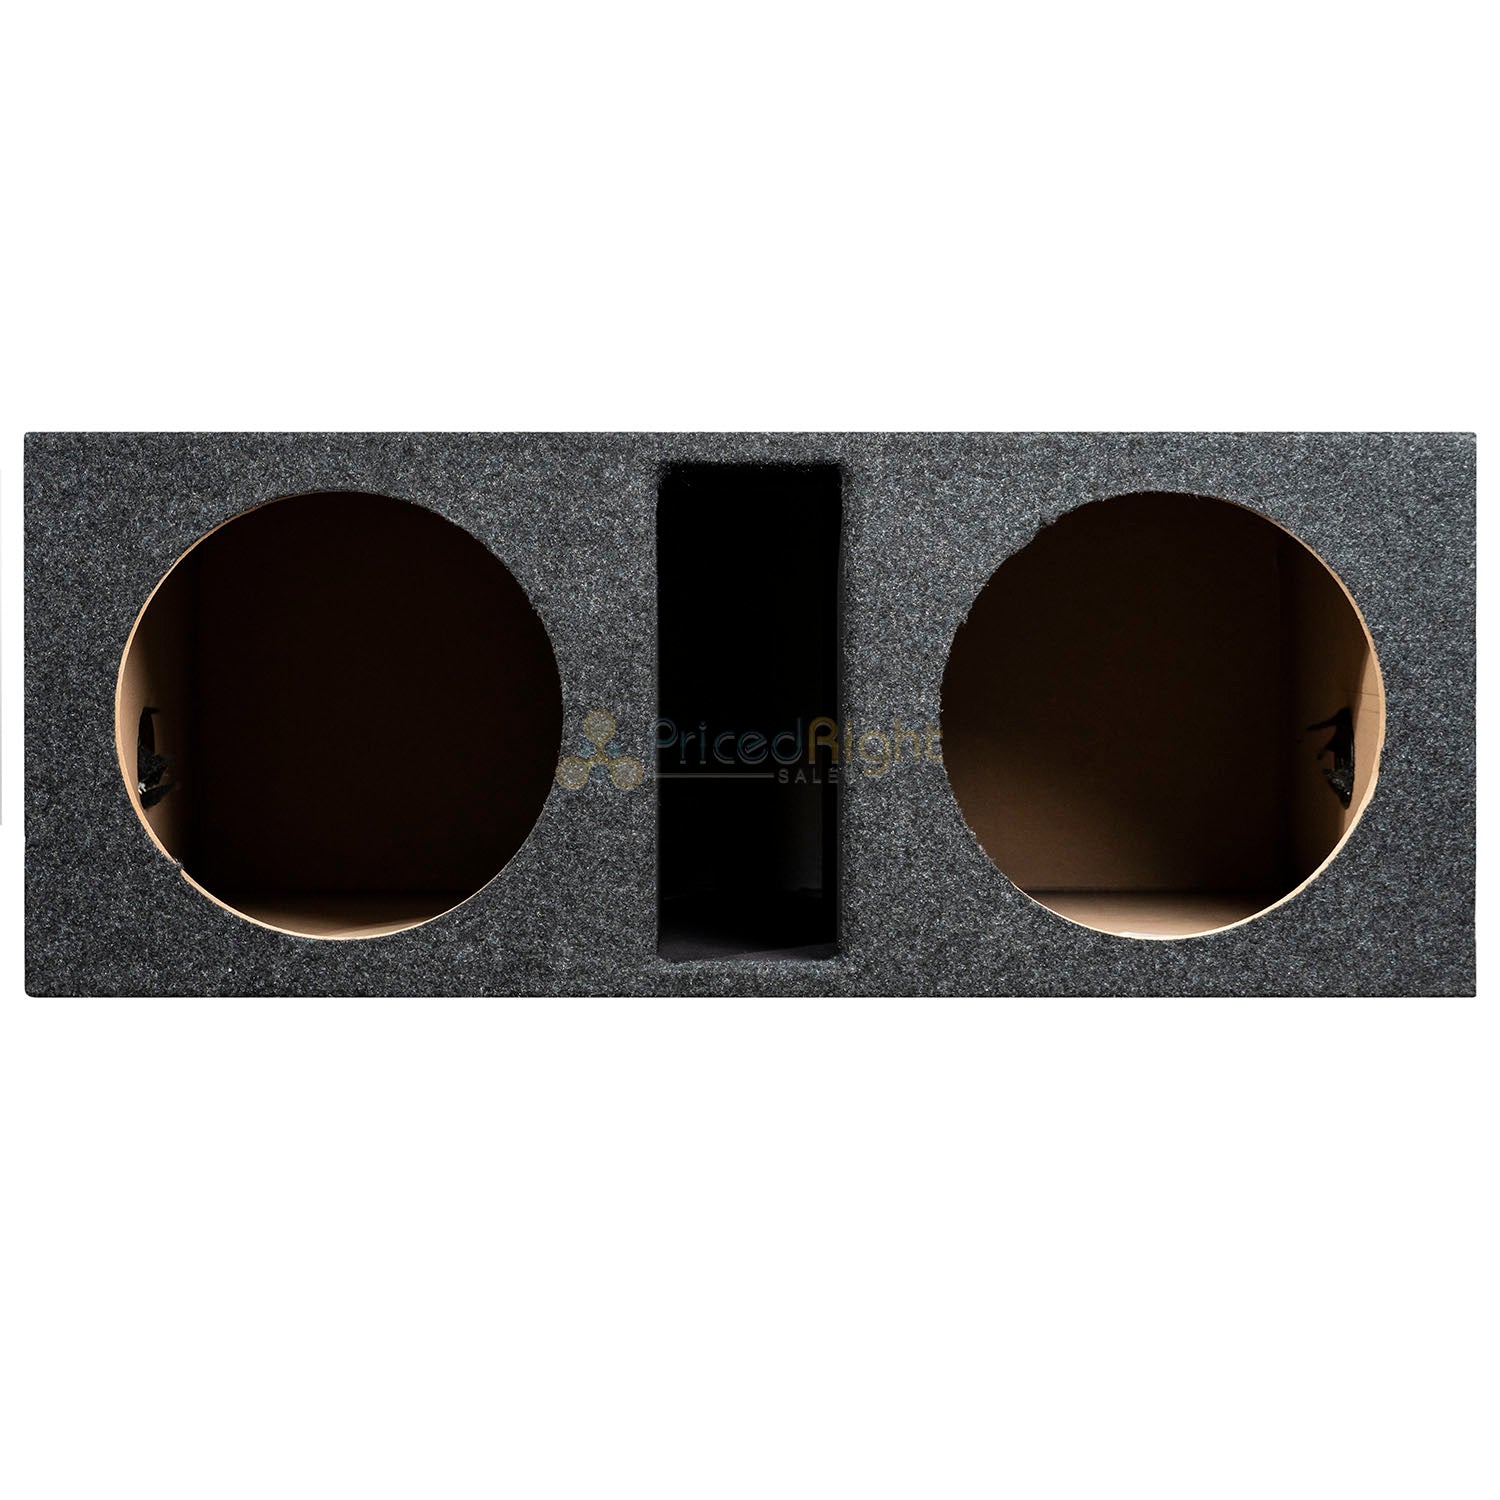 Dual 12" Ported Subwoofer Box Enclosure 3/4" MDF Vented Sub Box RI Audio Carpet